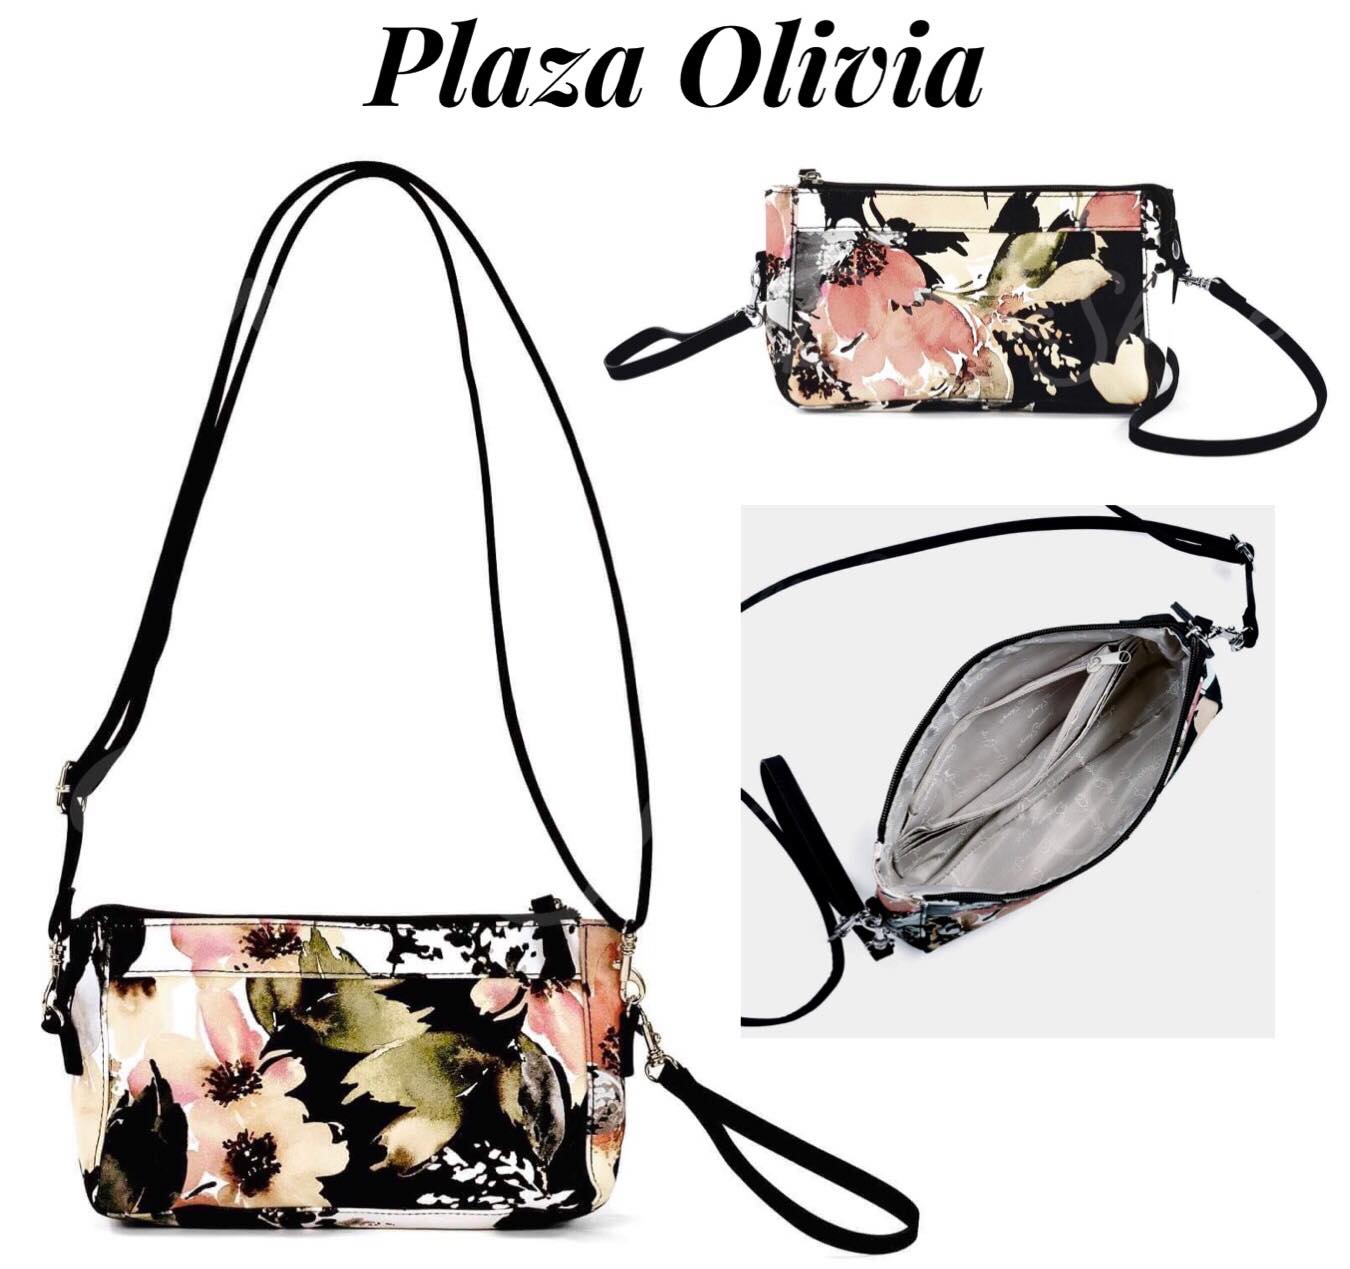 NWOT Donna Sharp Quilted Handbag Shoulder Bag Purse TAN/ Brown | eBay